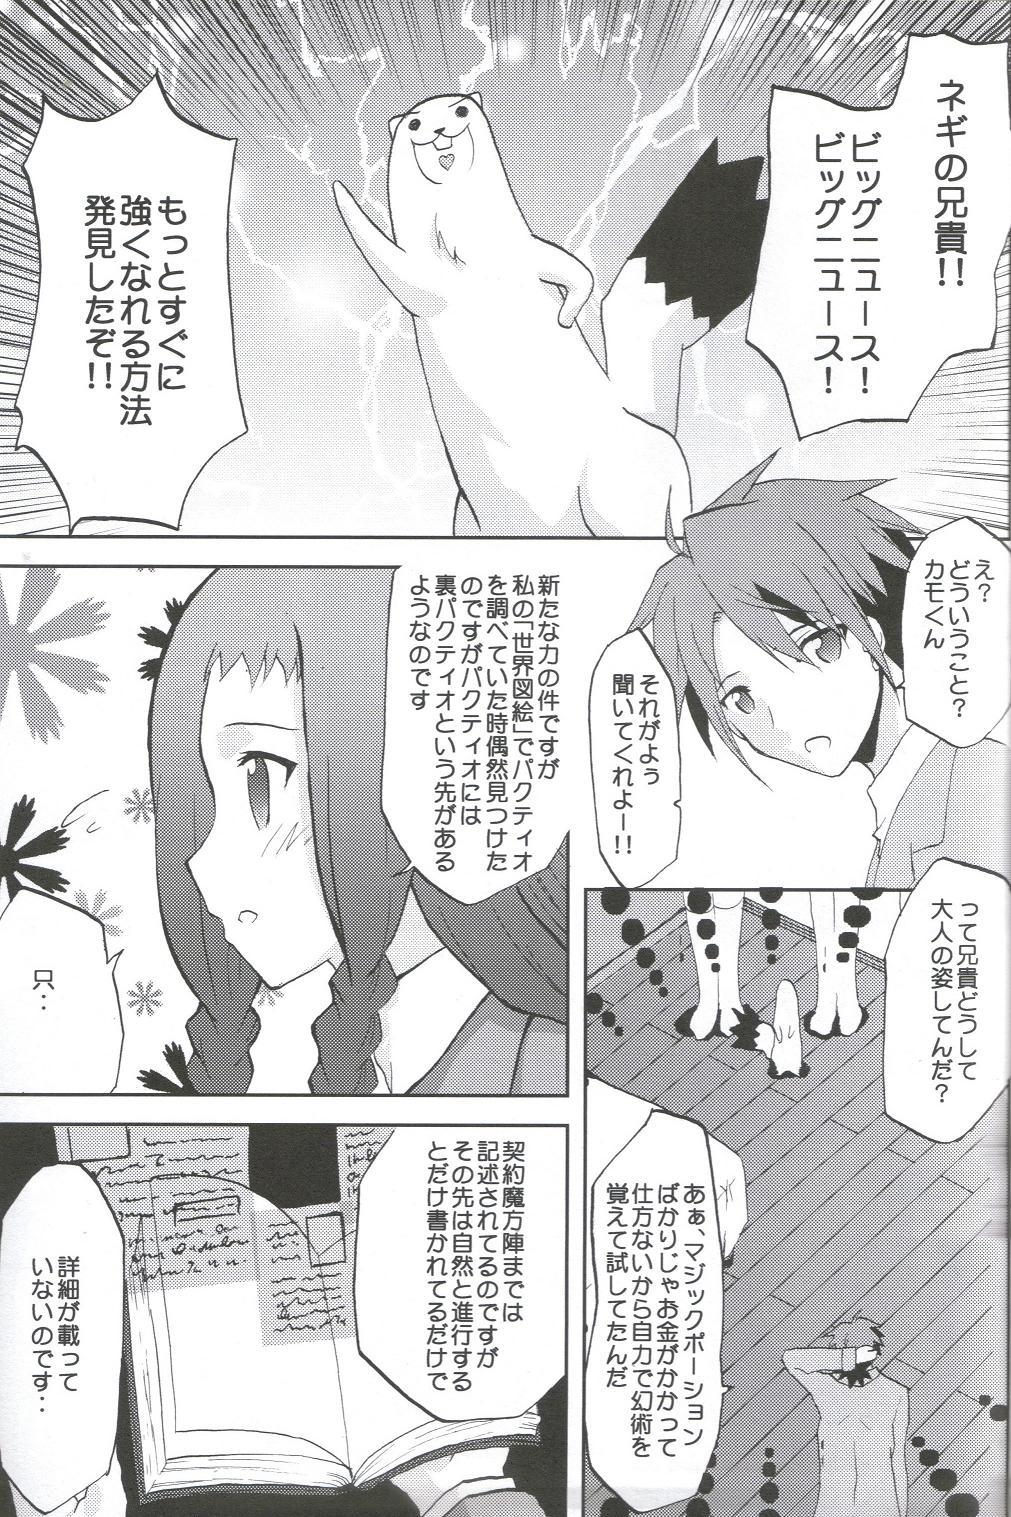 Semen Kansen Kakudai .Negi Vol.1 - Mahou sensei negima Party - Page 4